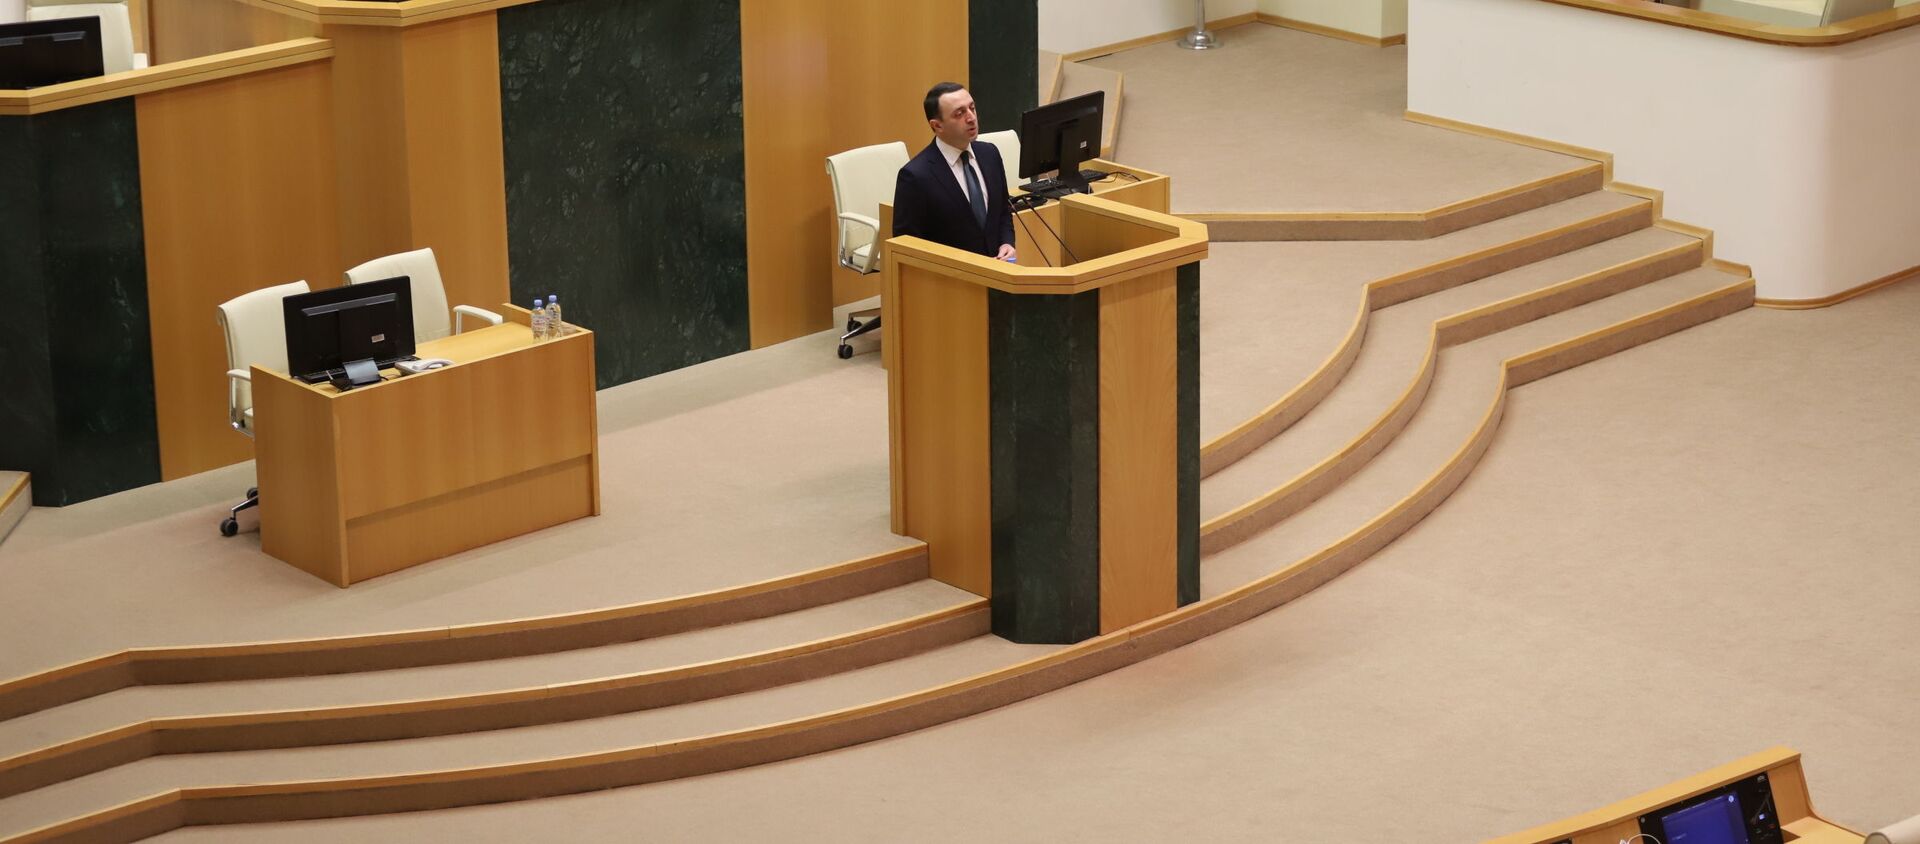 Ираклий Гарибашвили выступает в парламенте 22 февраля 2021 года - Sputnik Грузия, 1920, 22.02.2021